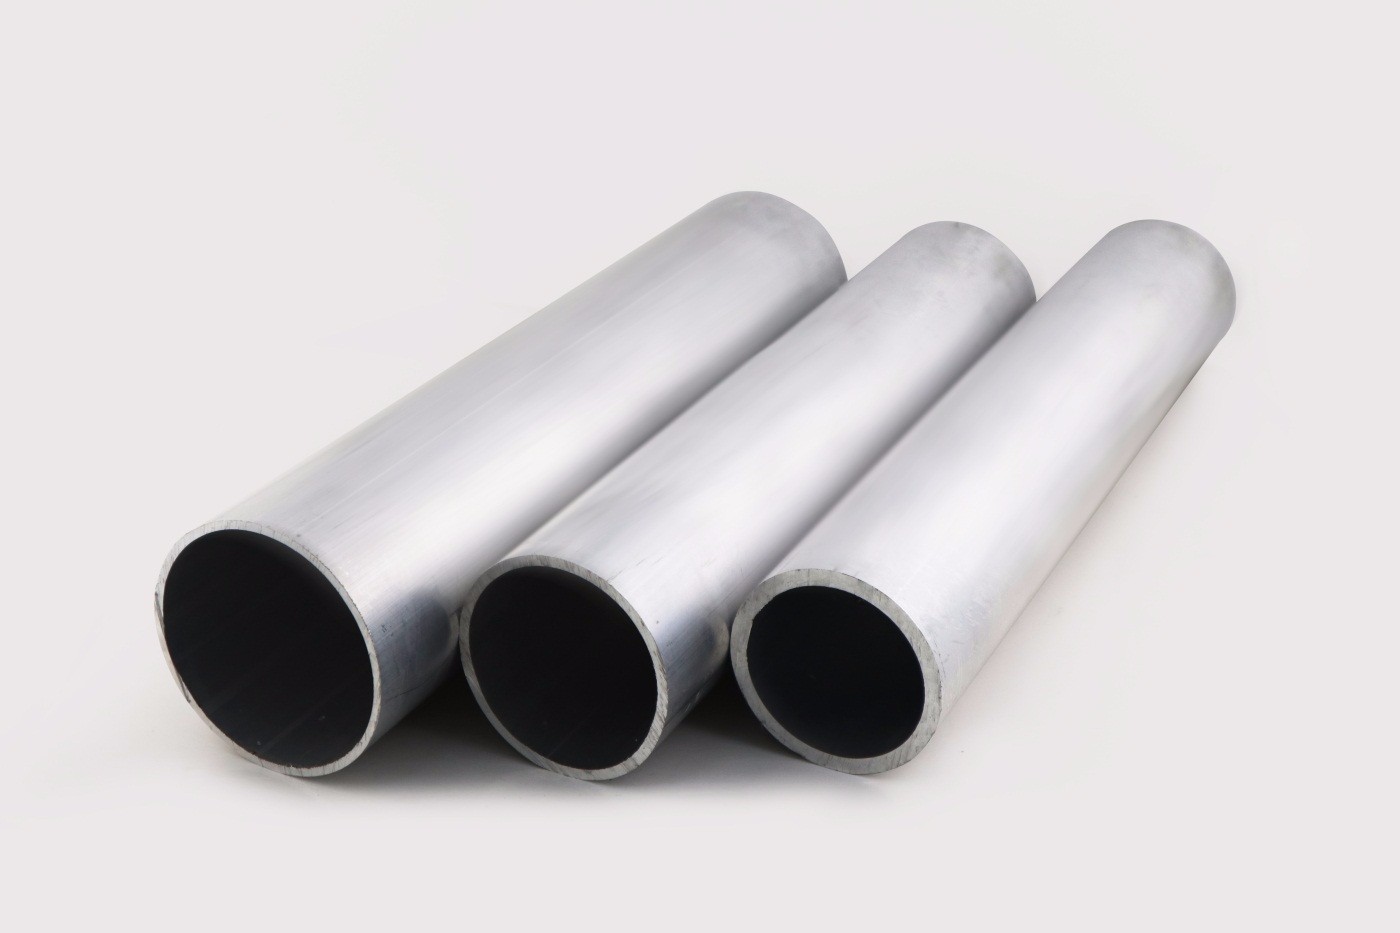 Aluminium pipe